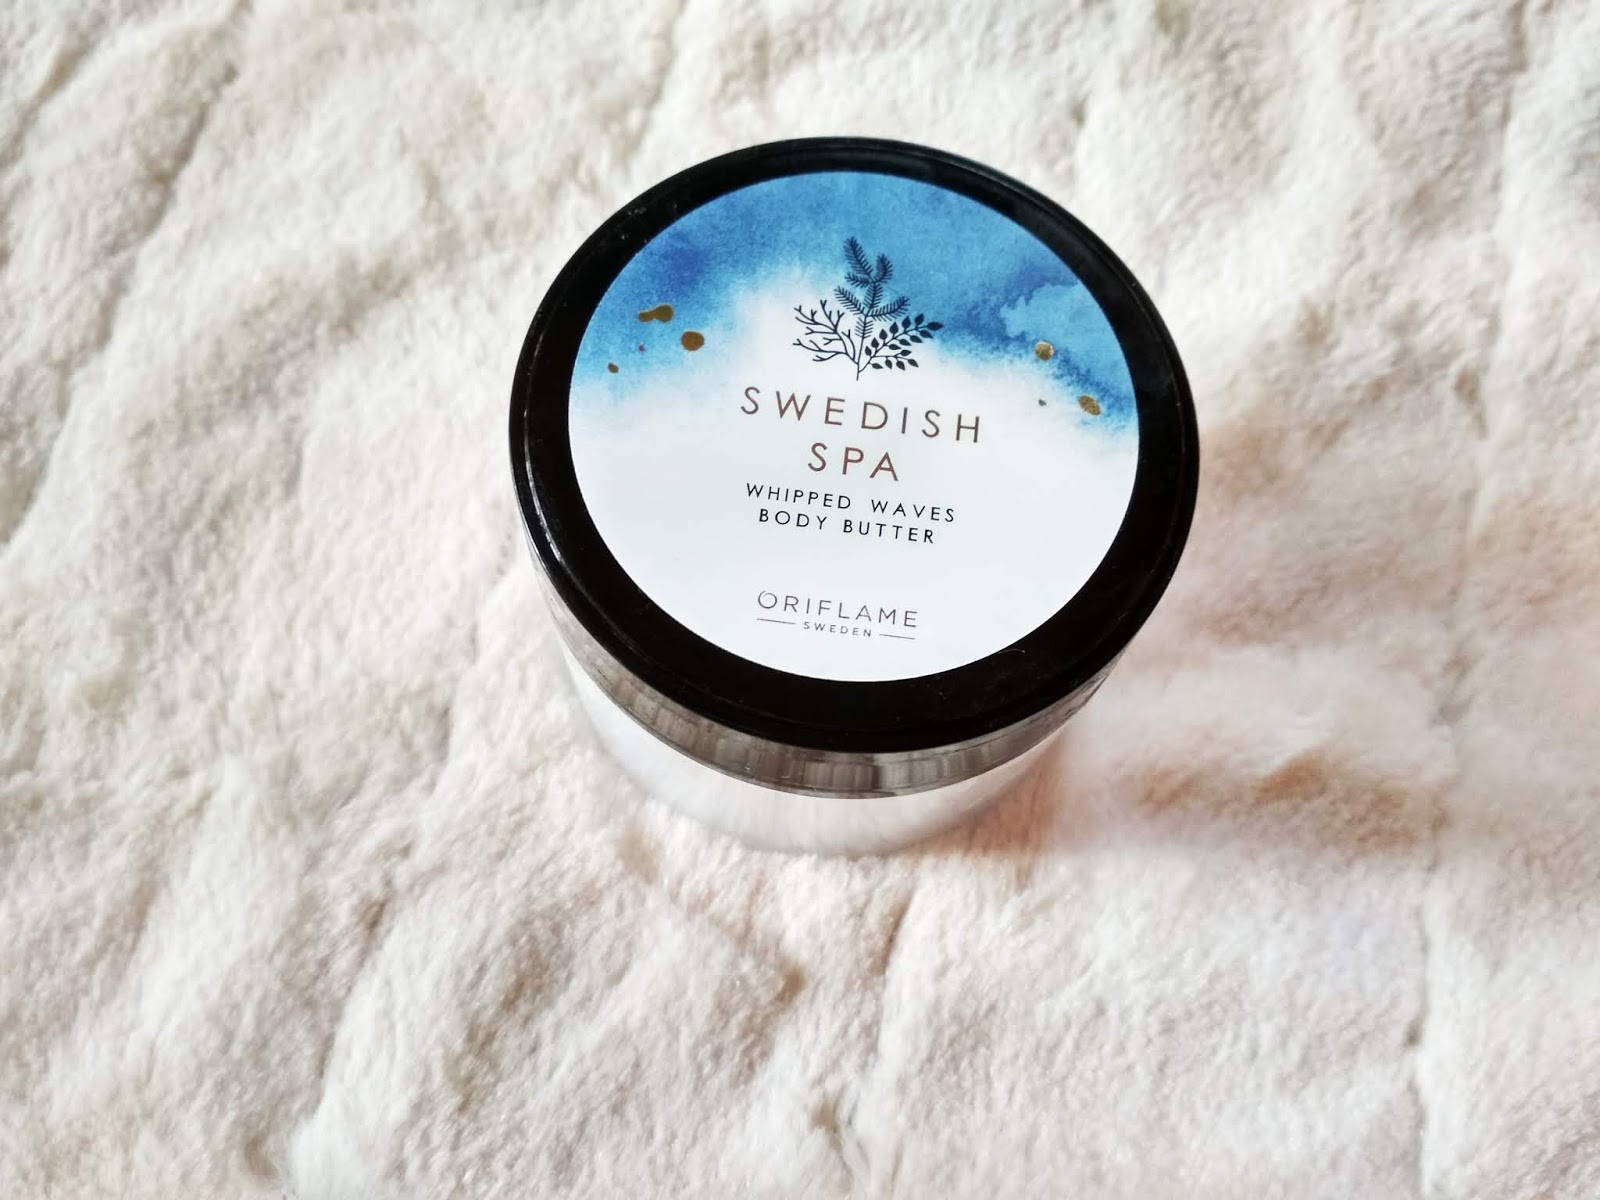 Recenzja - Oriflame, Swedish SPA masło i peeling solny do ciała | N. o kosmetykach